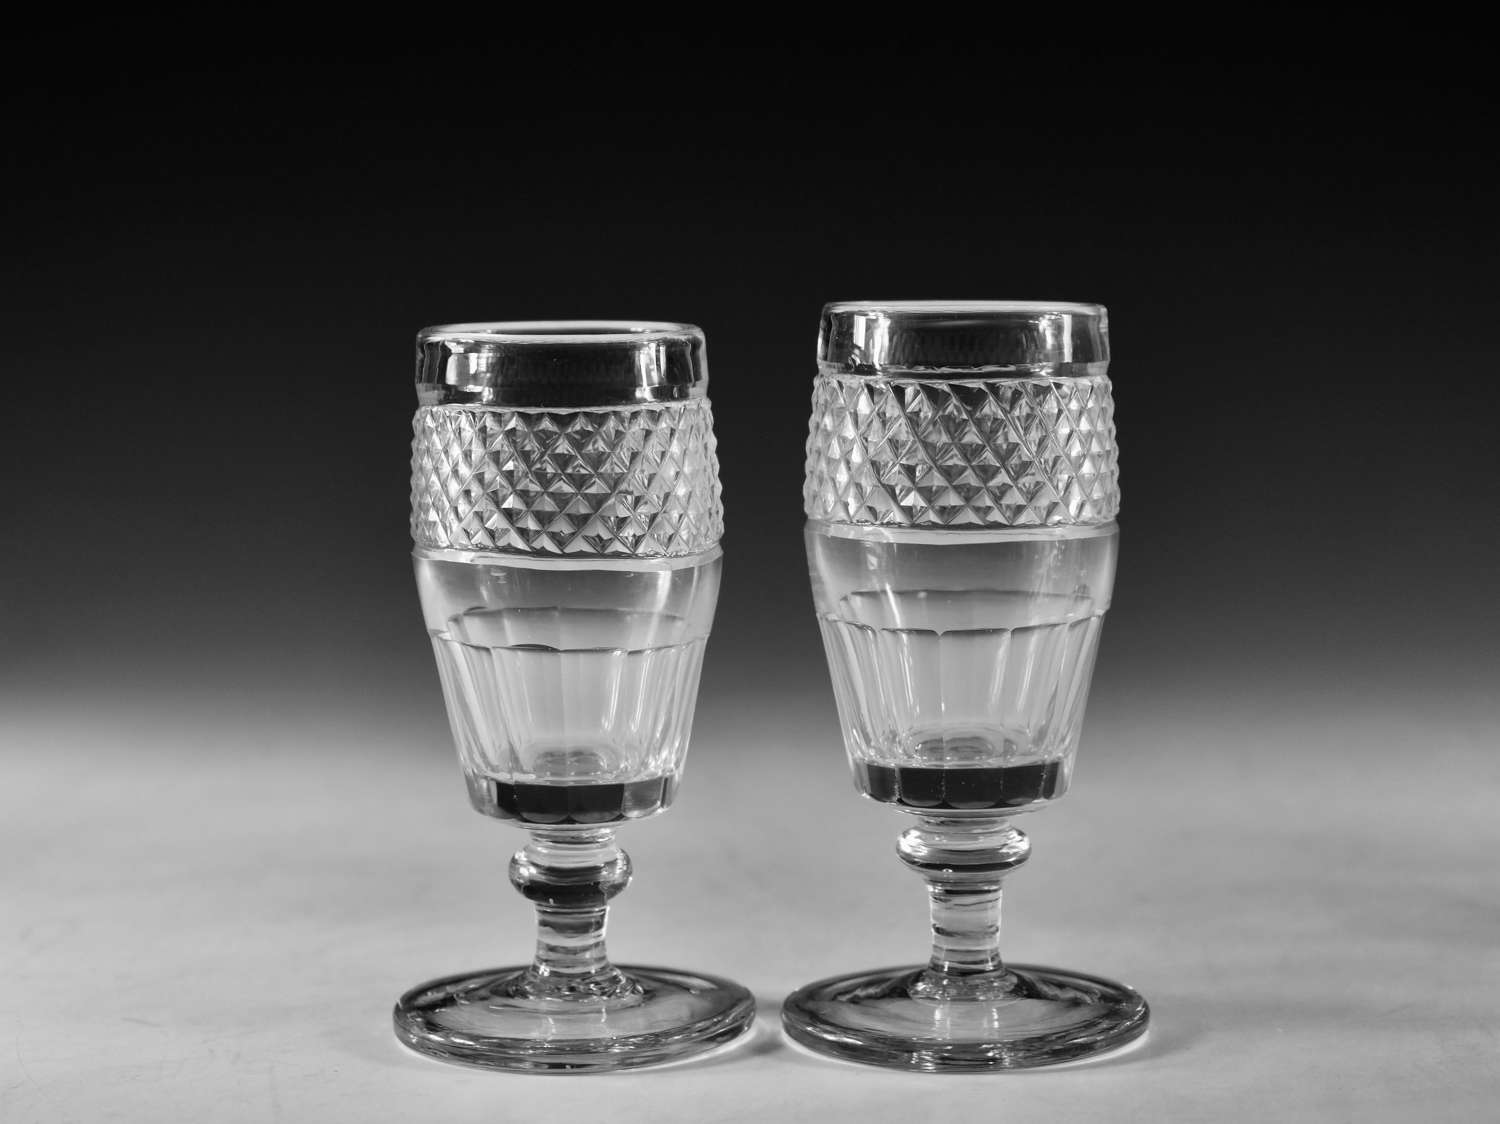 Antique glass - pair of Irish wine glasses c1820